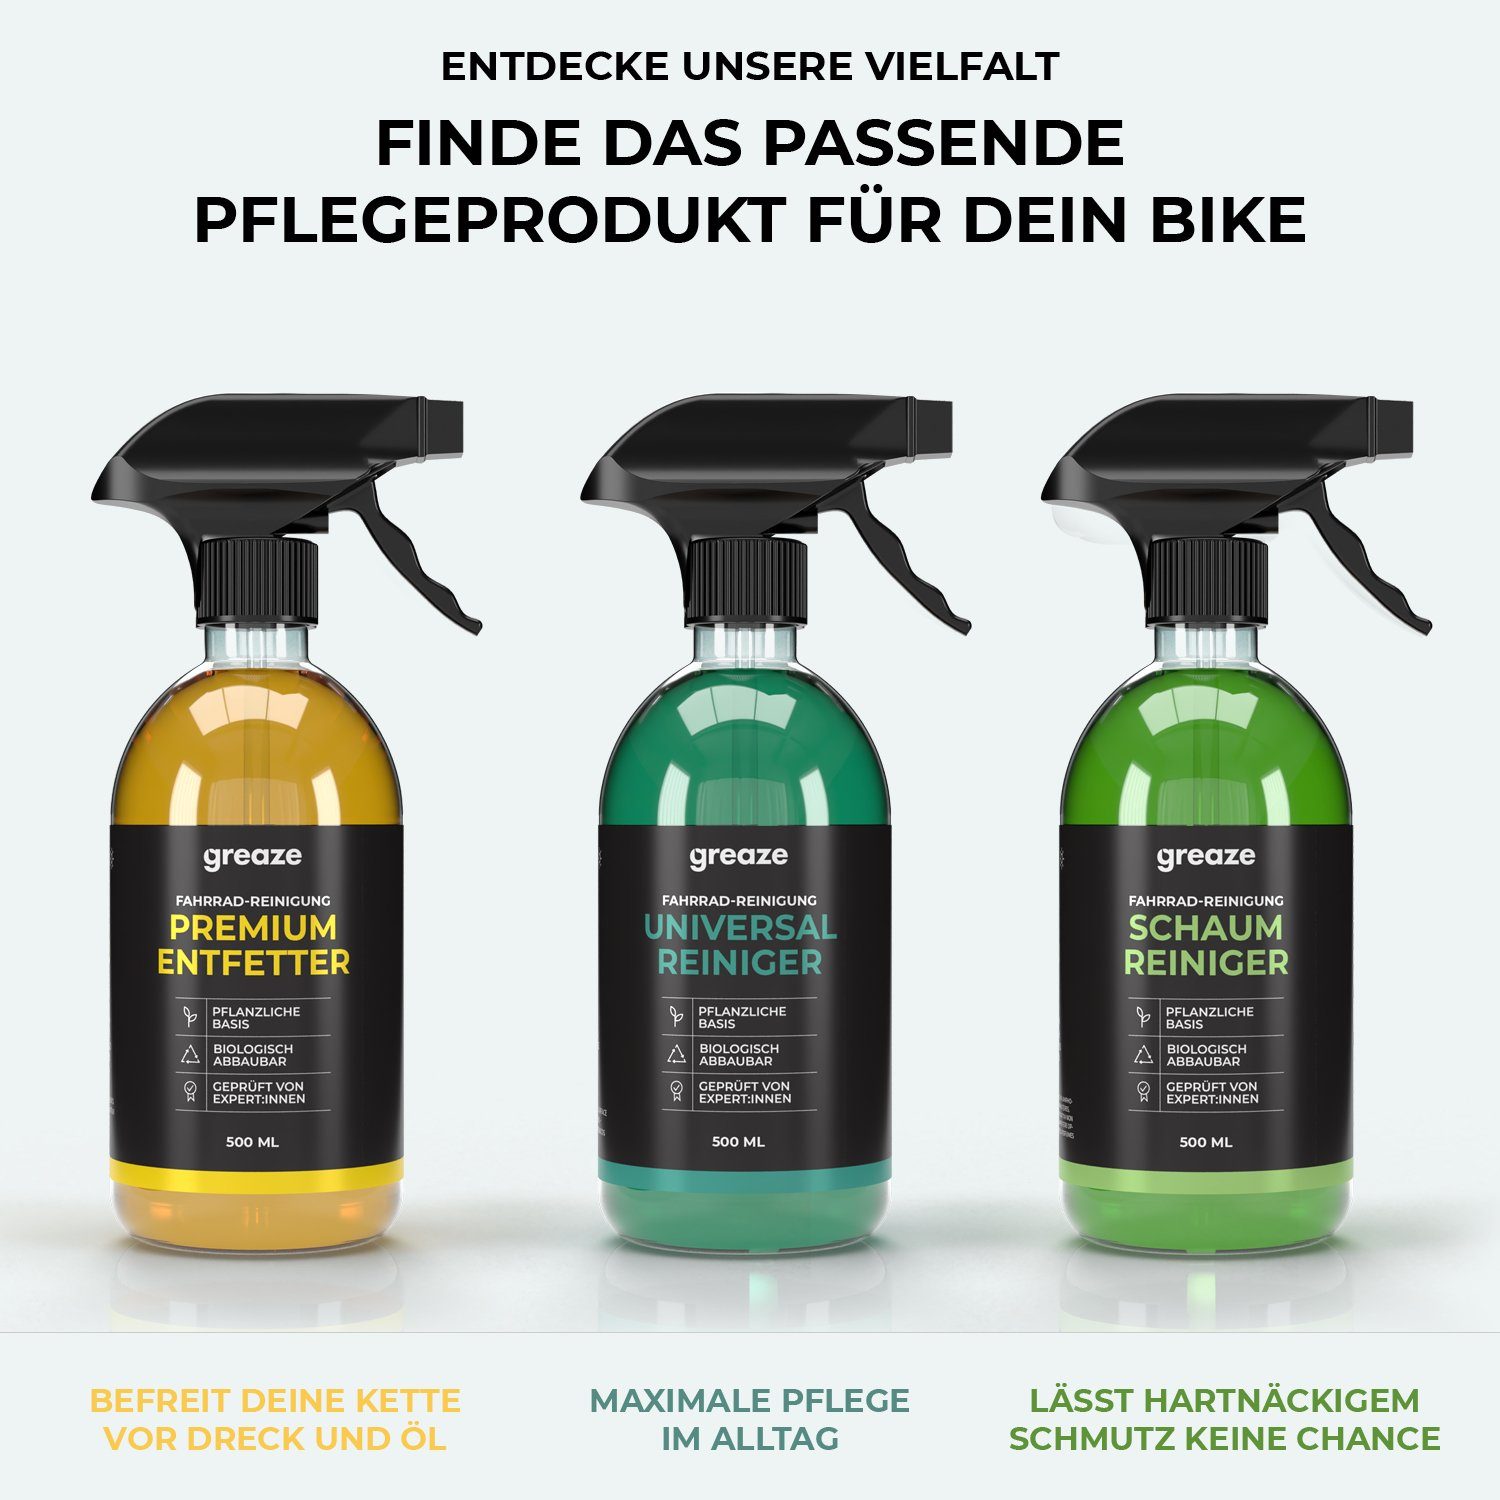 Fahrrad-Reiniger Universal greaze greaze biologisch Fahrradketten abbaubar